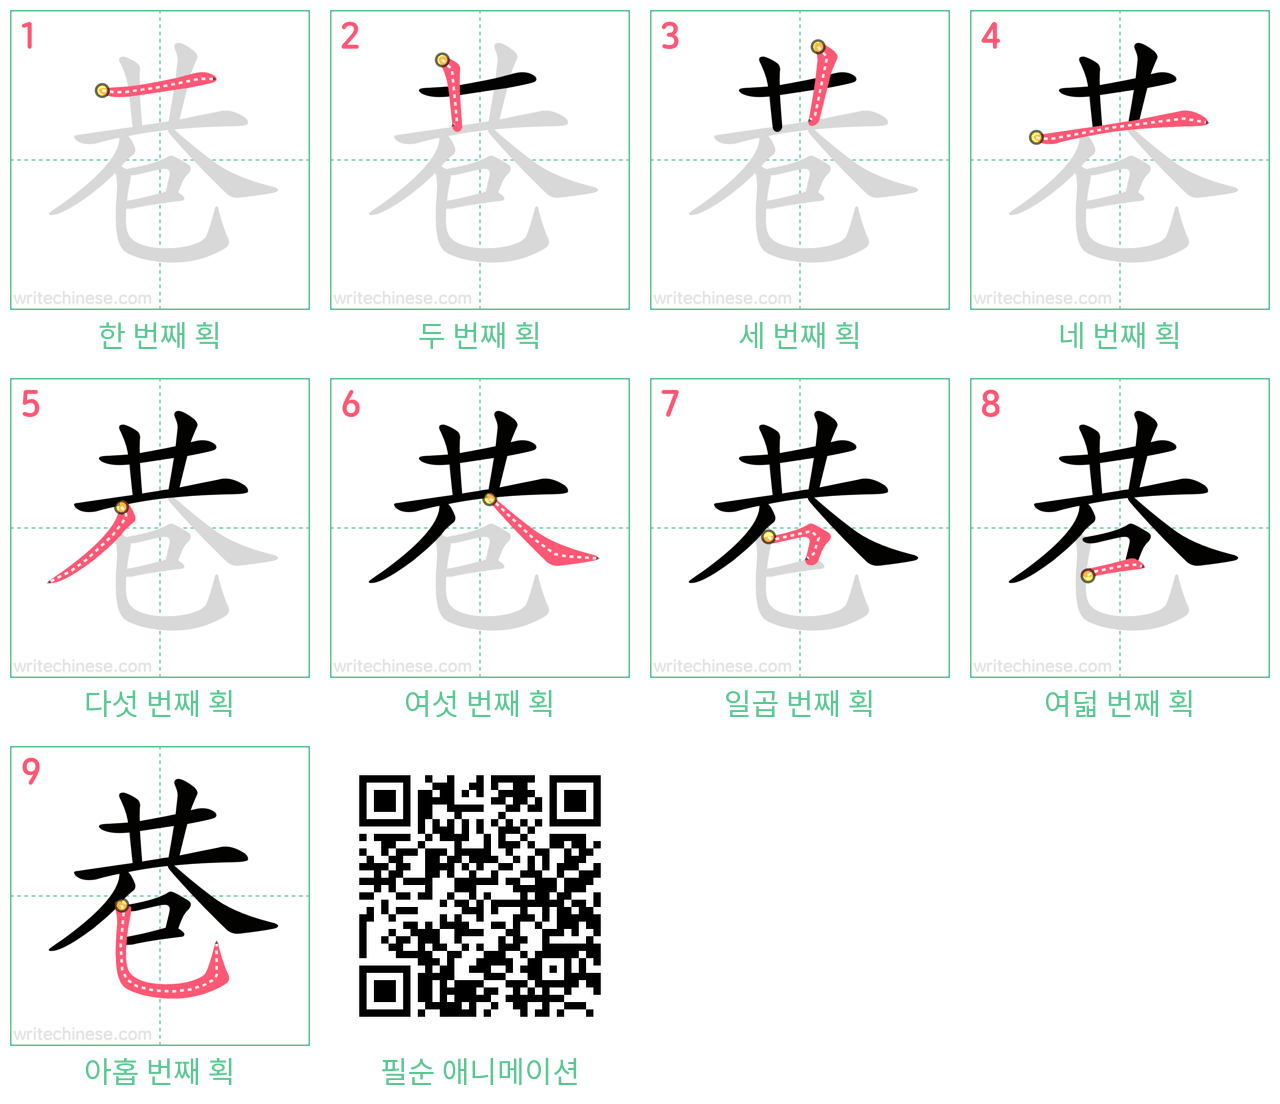 巷 step-by-step stroke order diagrams